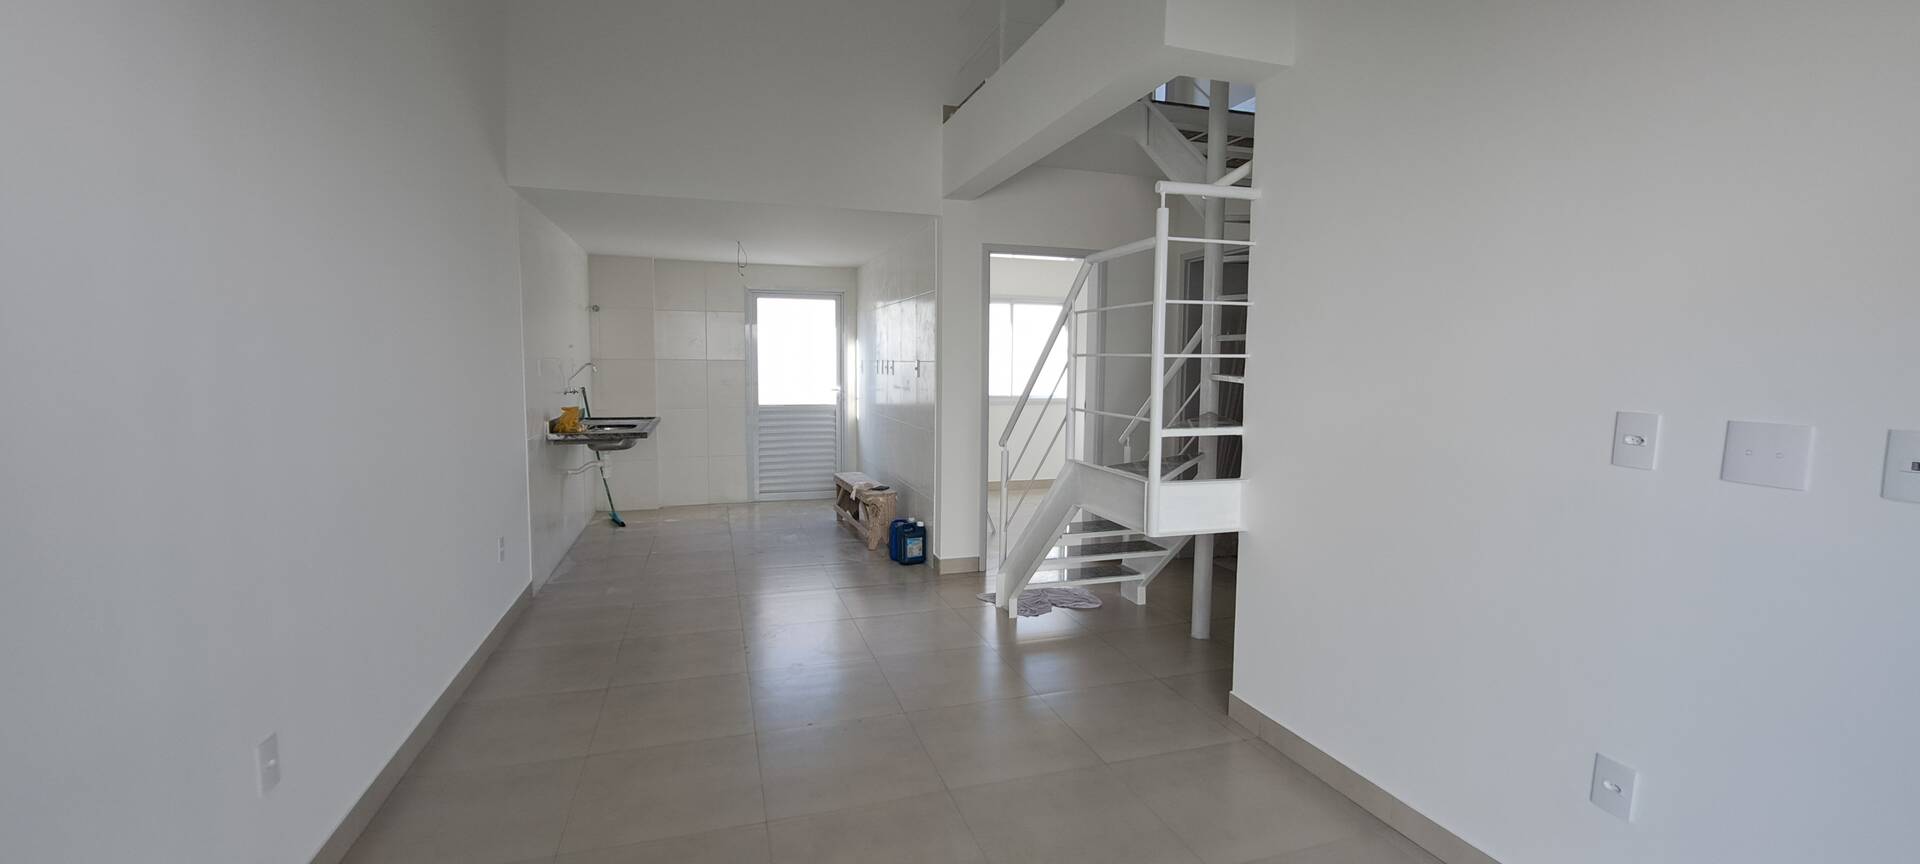 Apartamento, 2 quartos, 57 m² - Foto 2